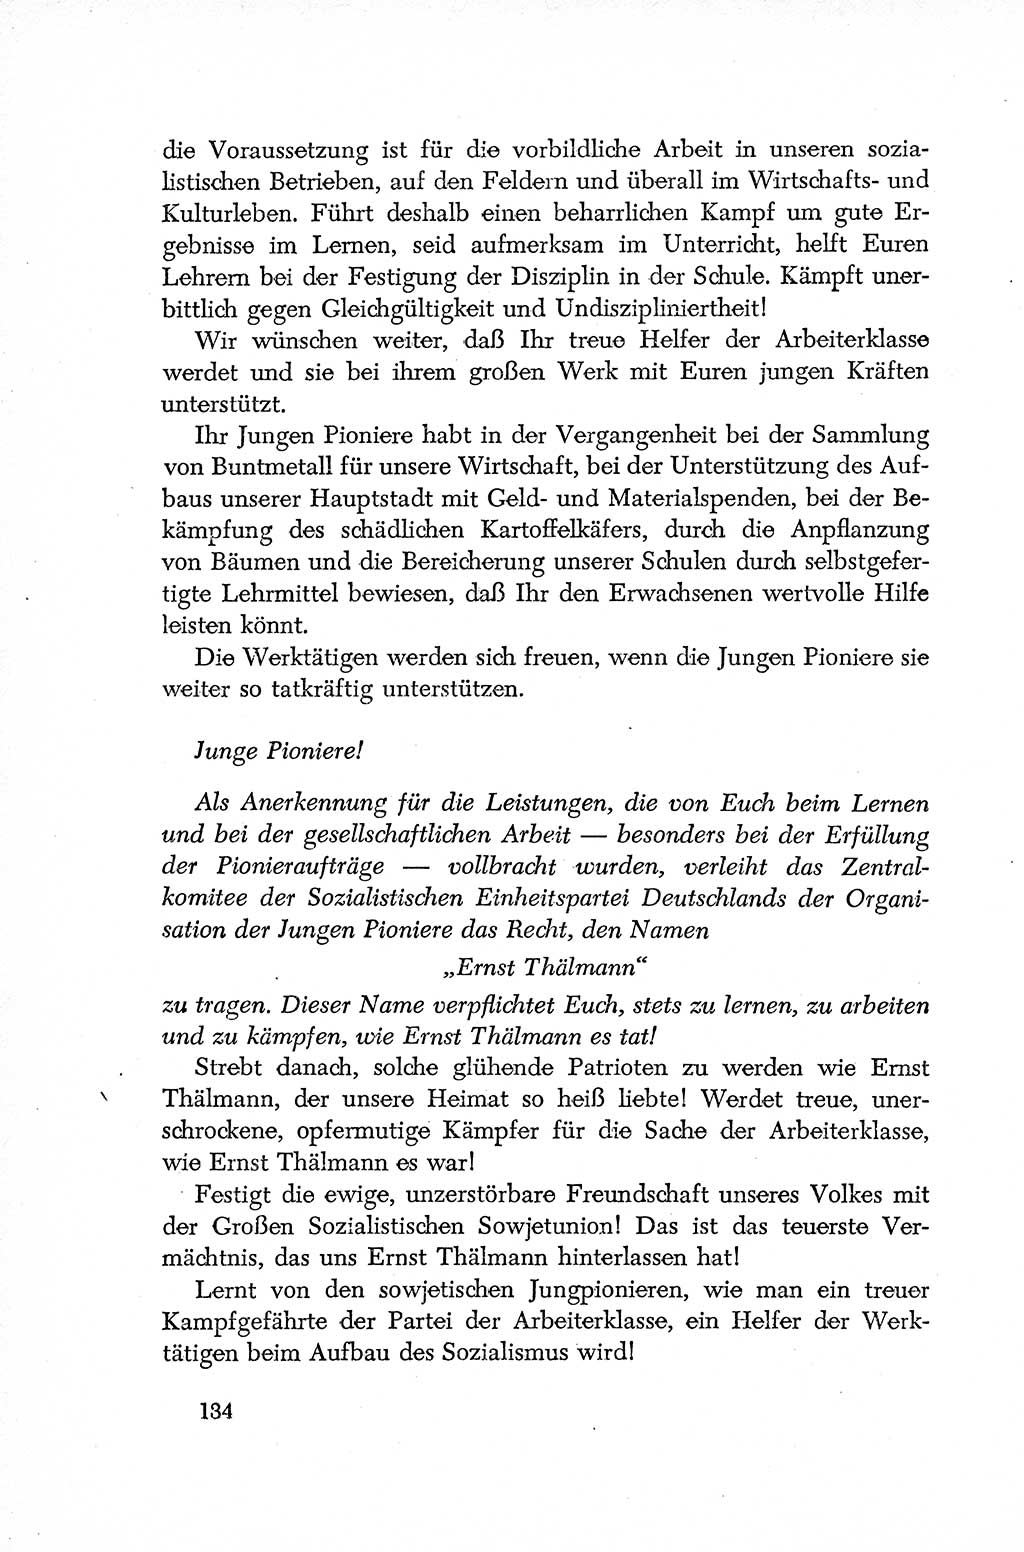 Dokumente der Sozialistischen Einheitspartei Deutschlands (SED) [Deutsche Demokratische Republik (DDR)] 1952-1953, Seite 134 (Dok. SED DDR 1952-1953, S. 134)